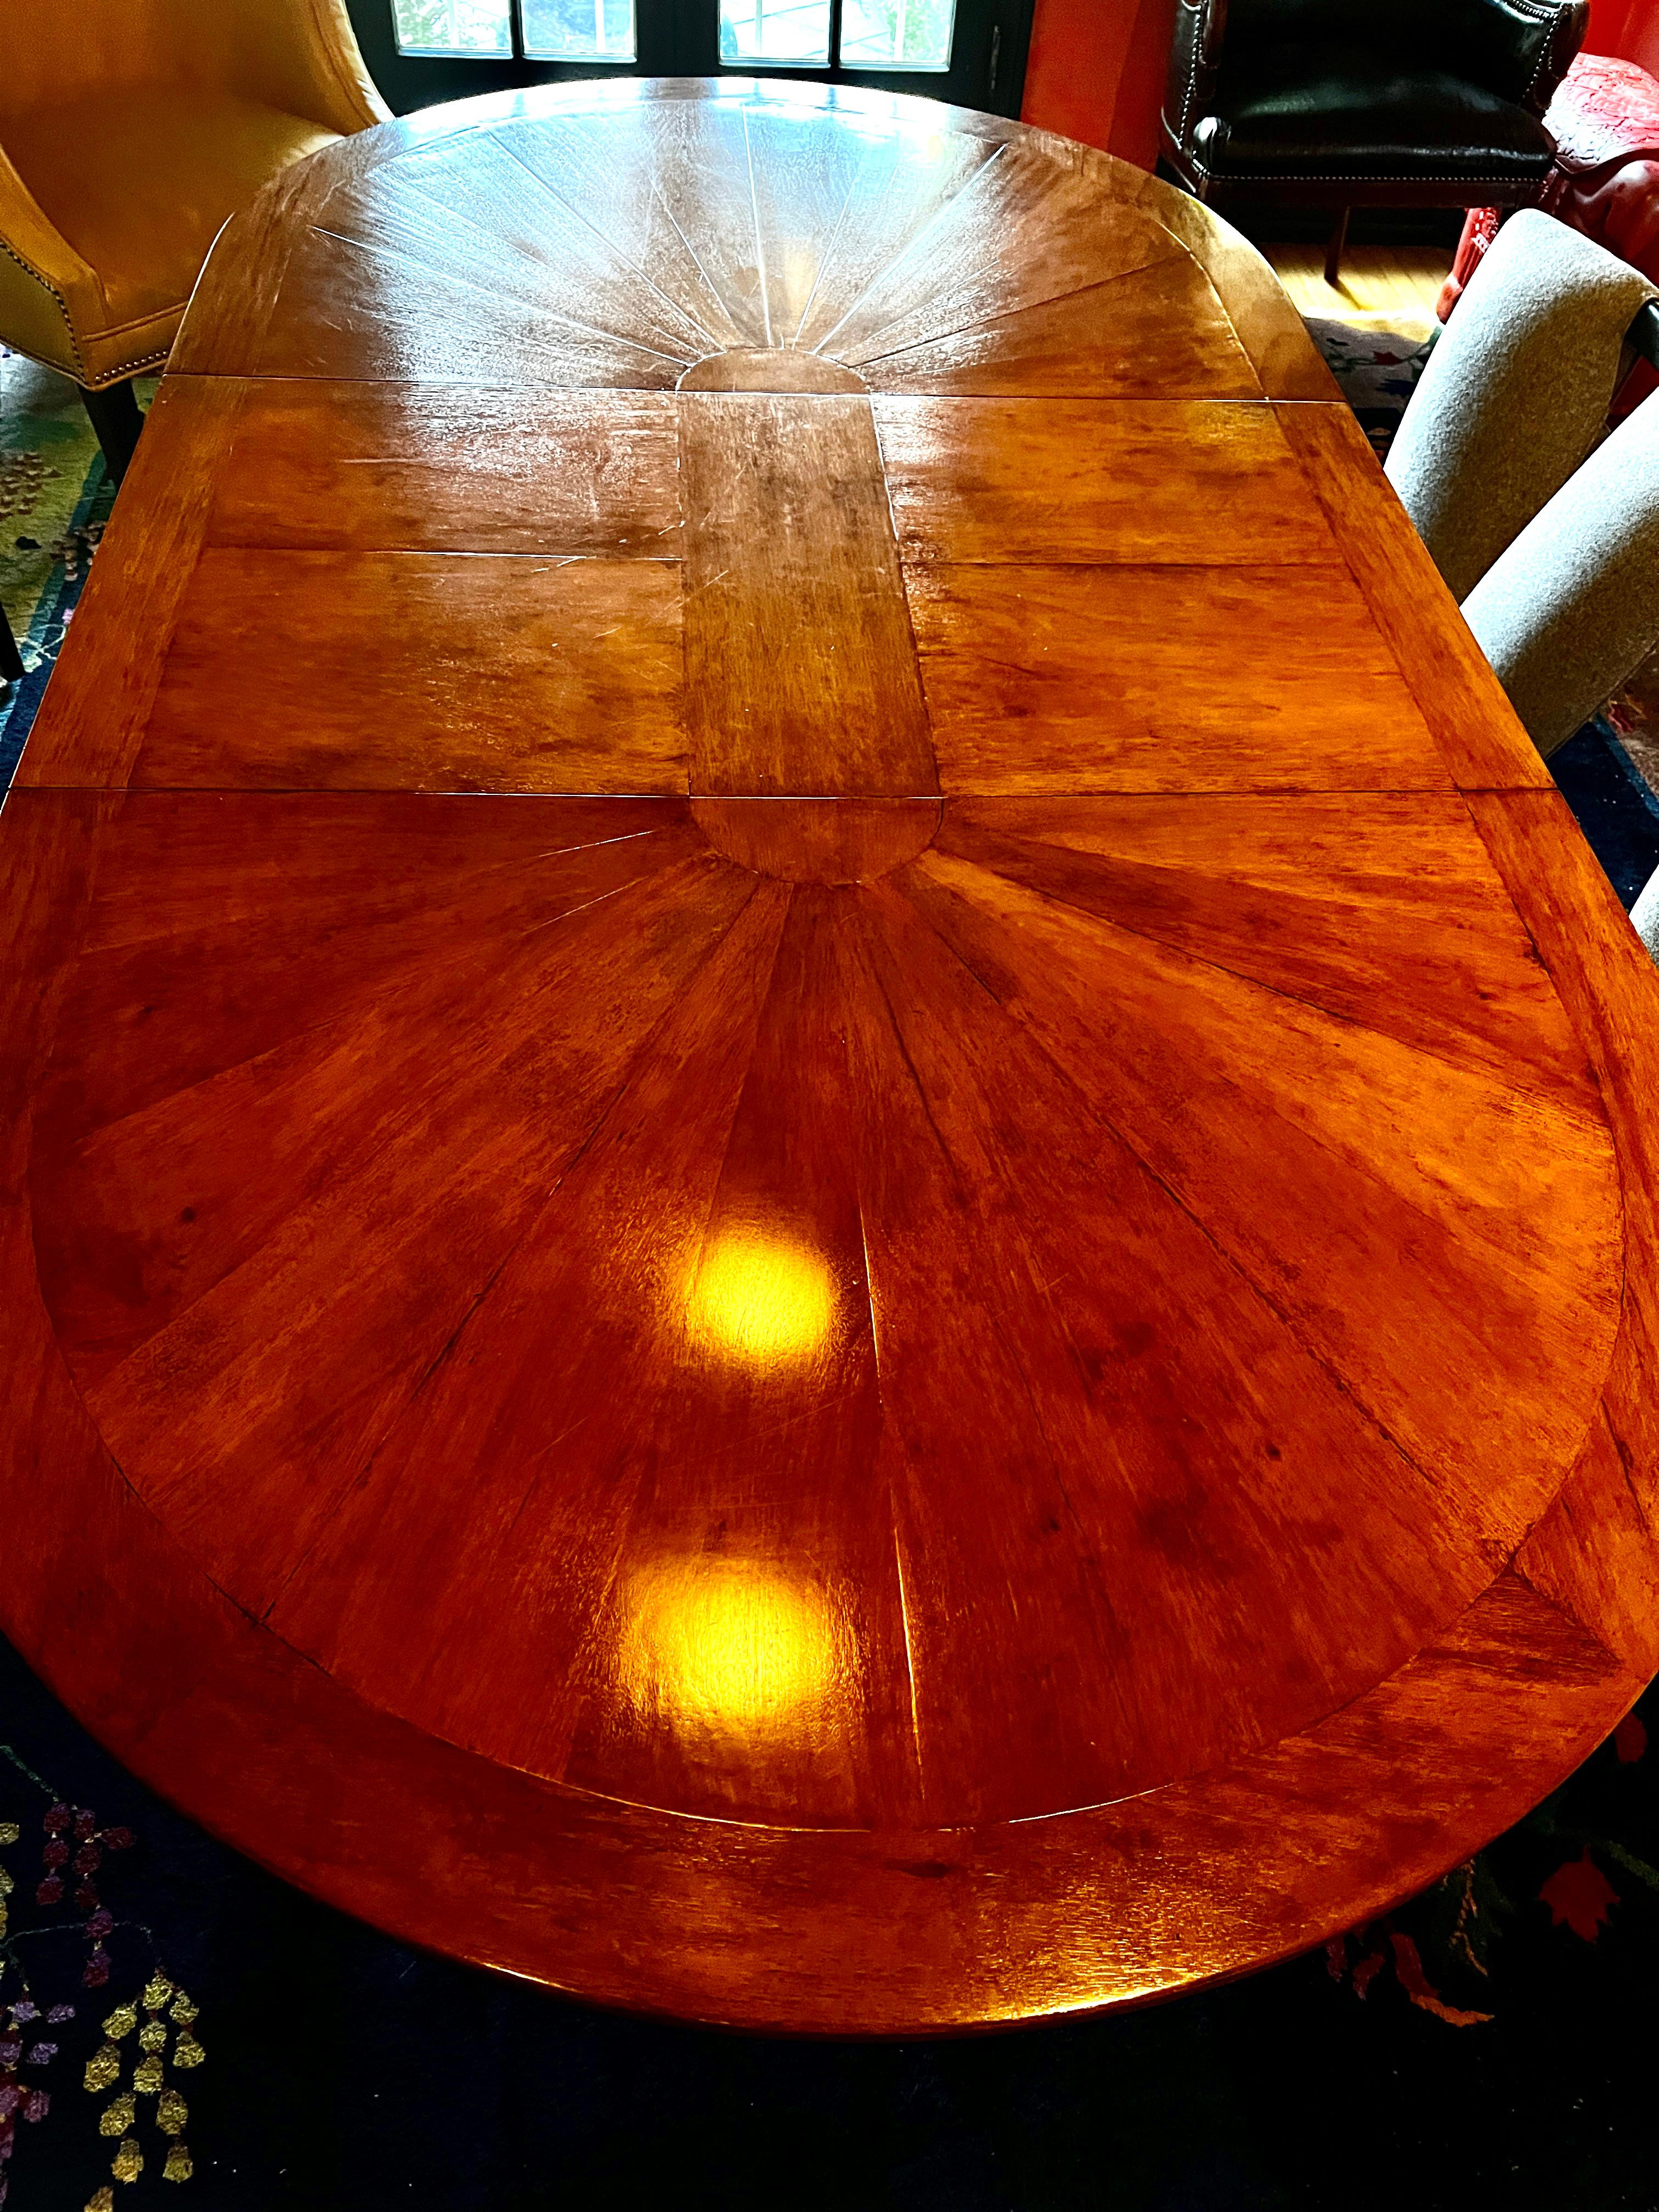 Rose Tarlow Regency Sunburst Walnut Dining Table with Extension 60